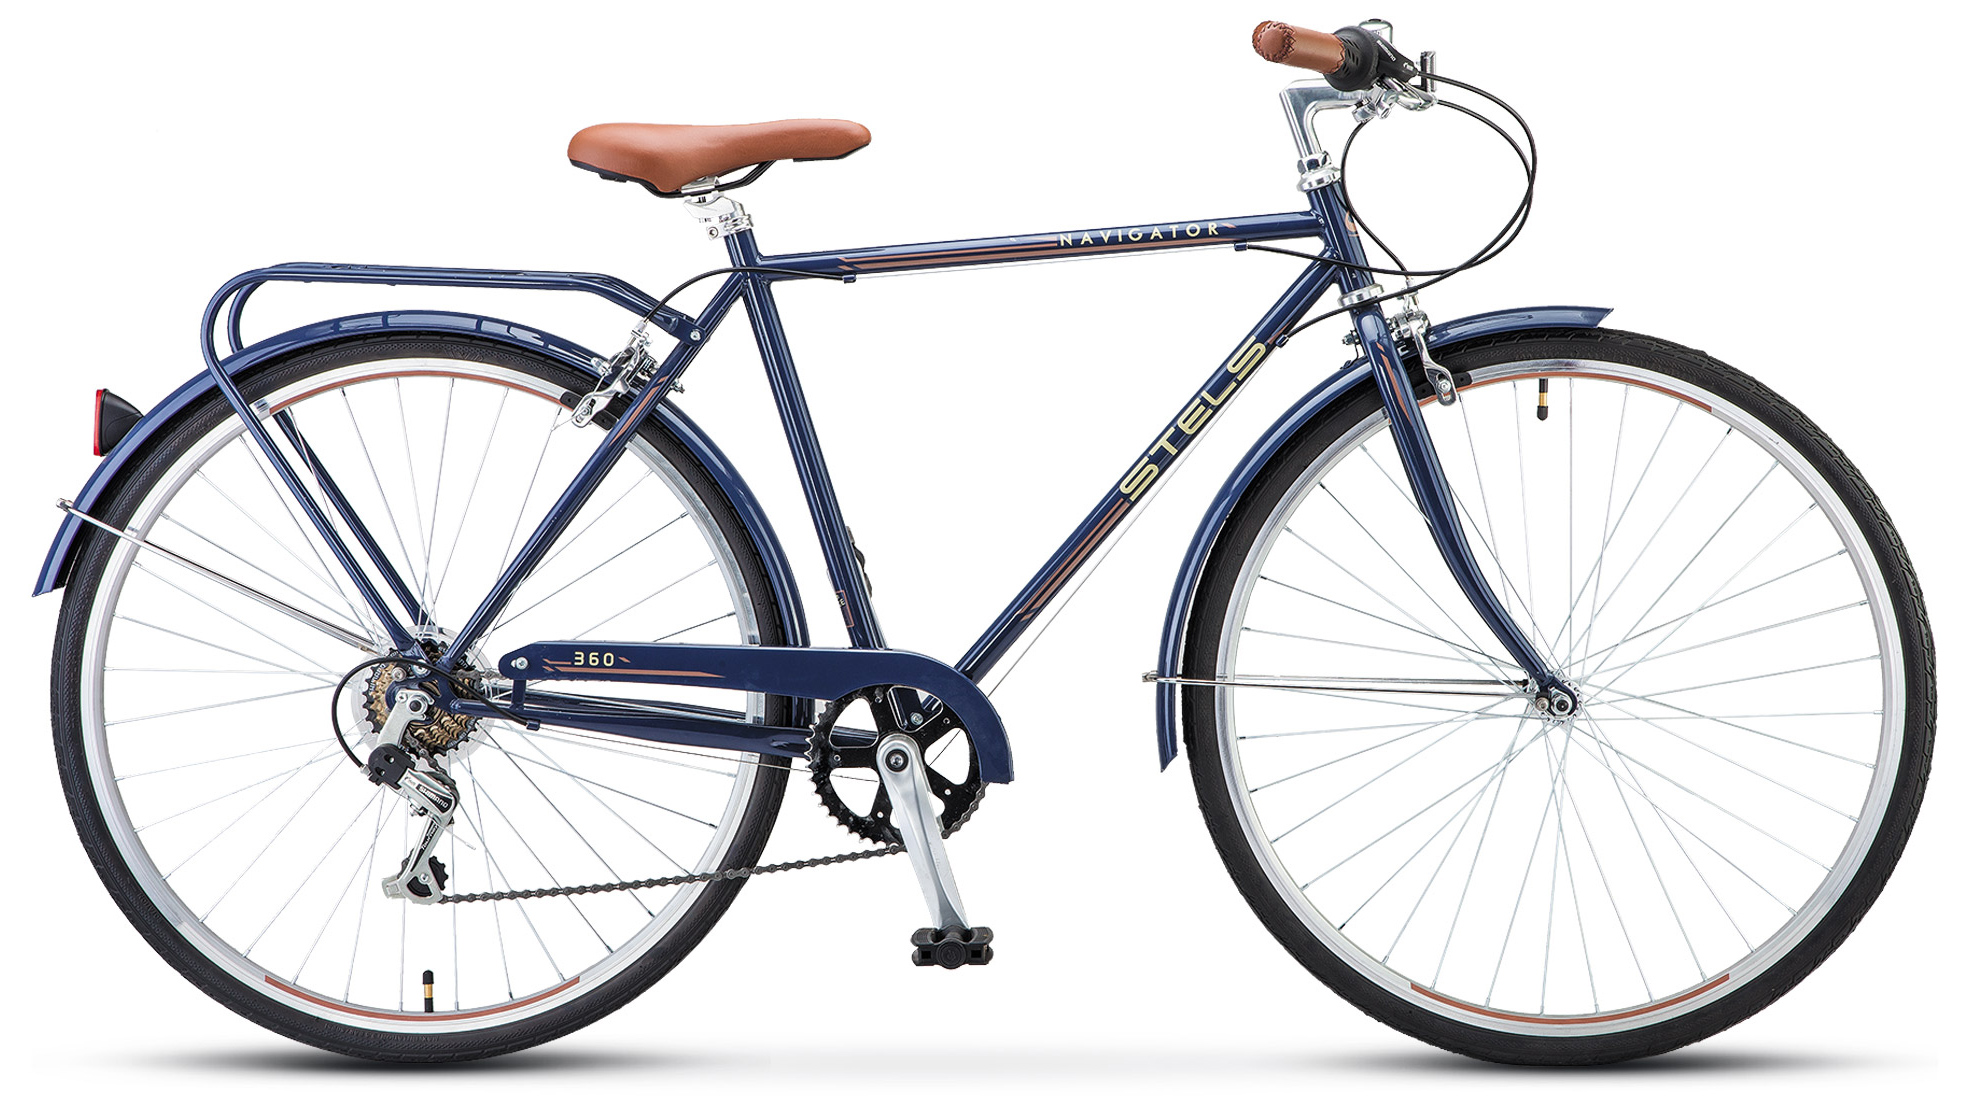  Отзывы о Городском велосипеде Stels Navigator 360 Gent 28 (V010) 2019